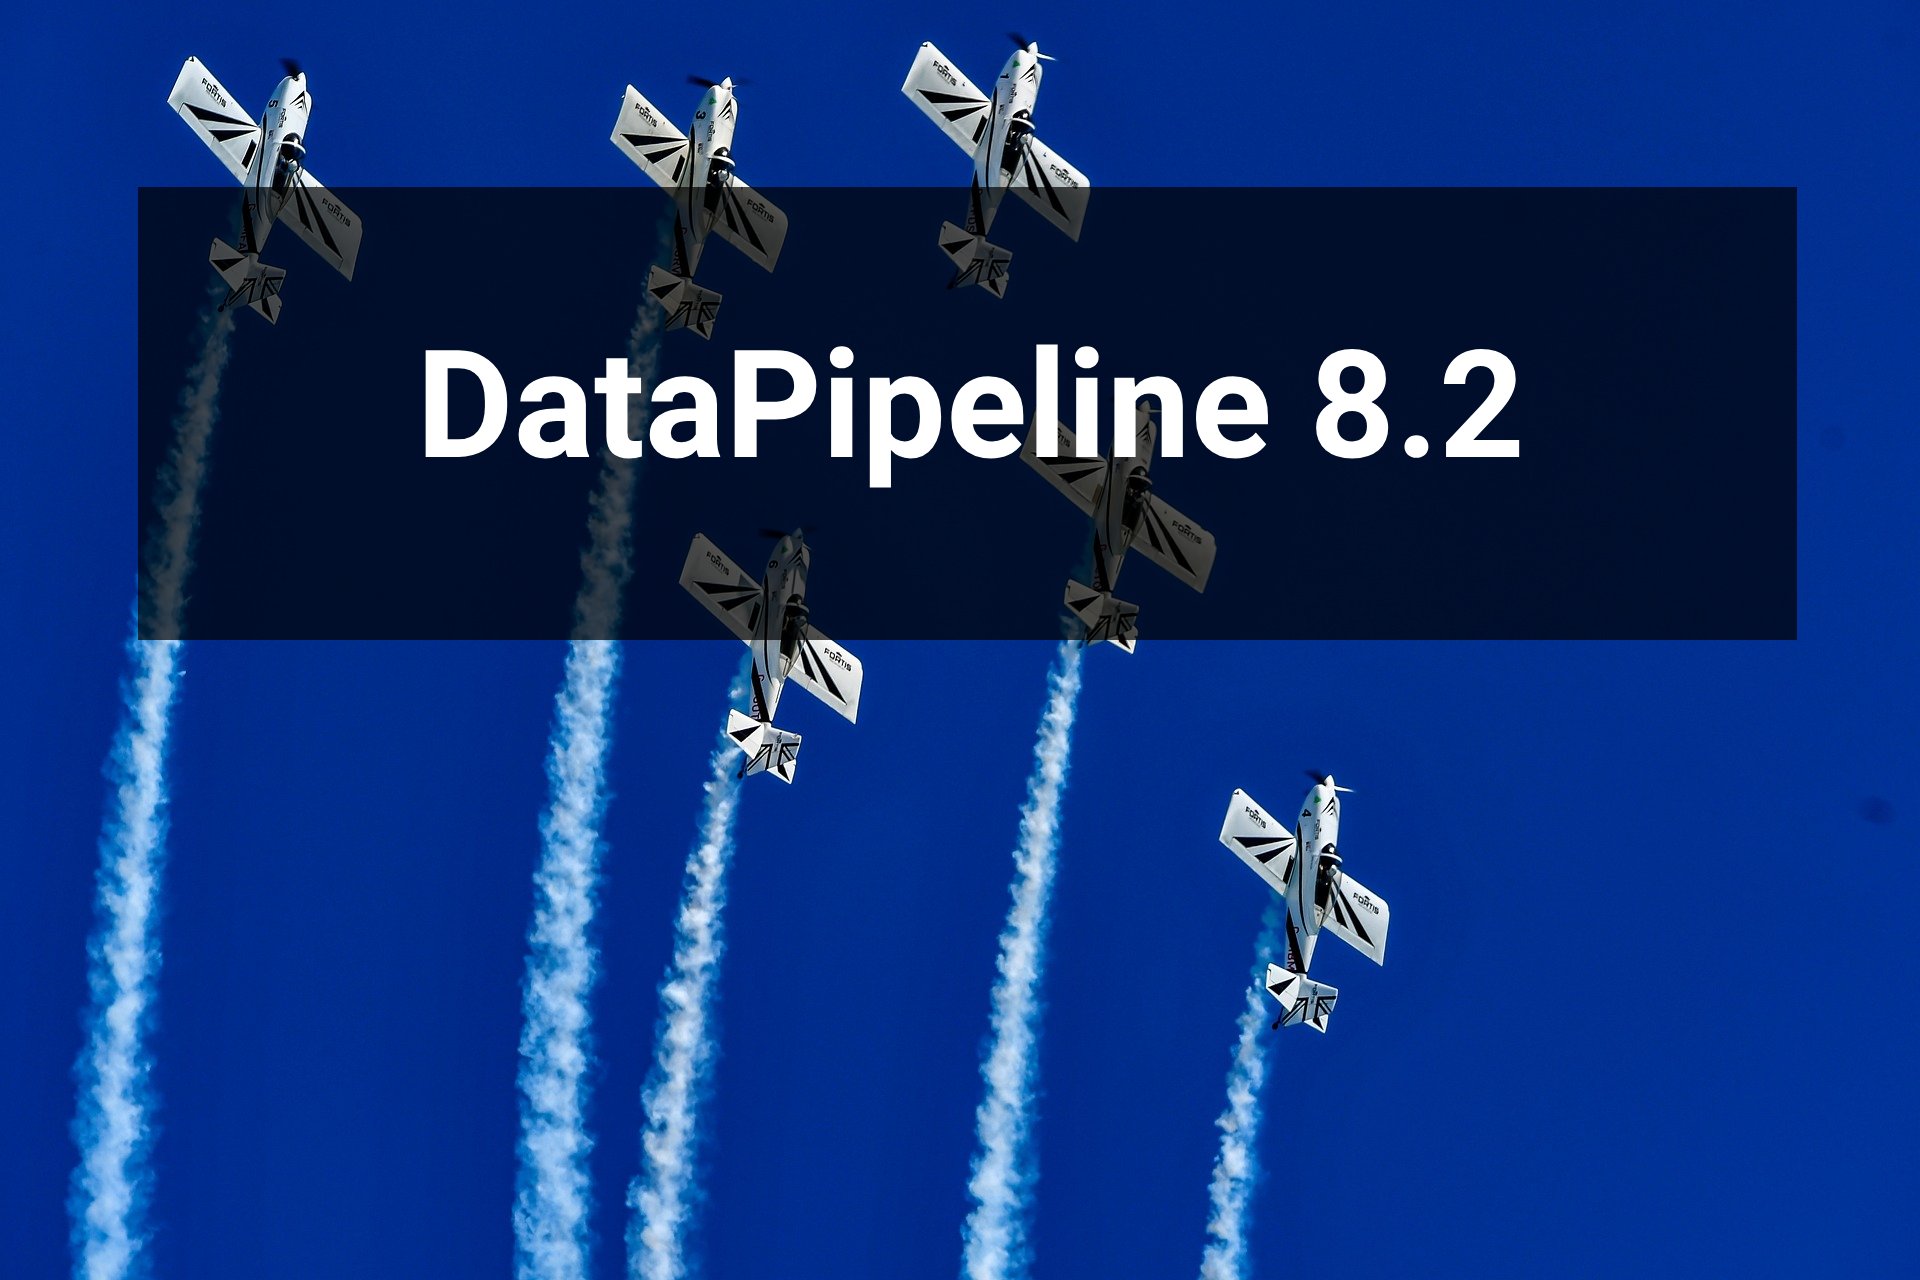 DataPipeline Release 8.2